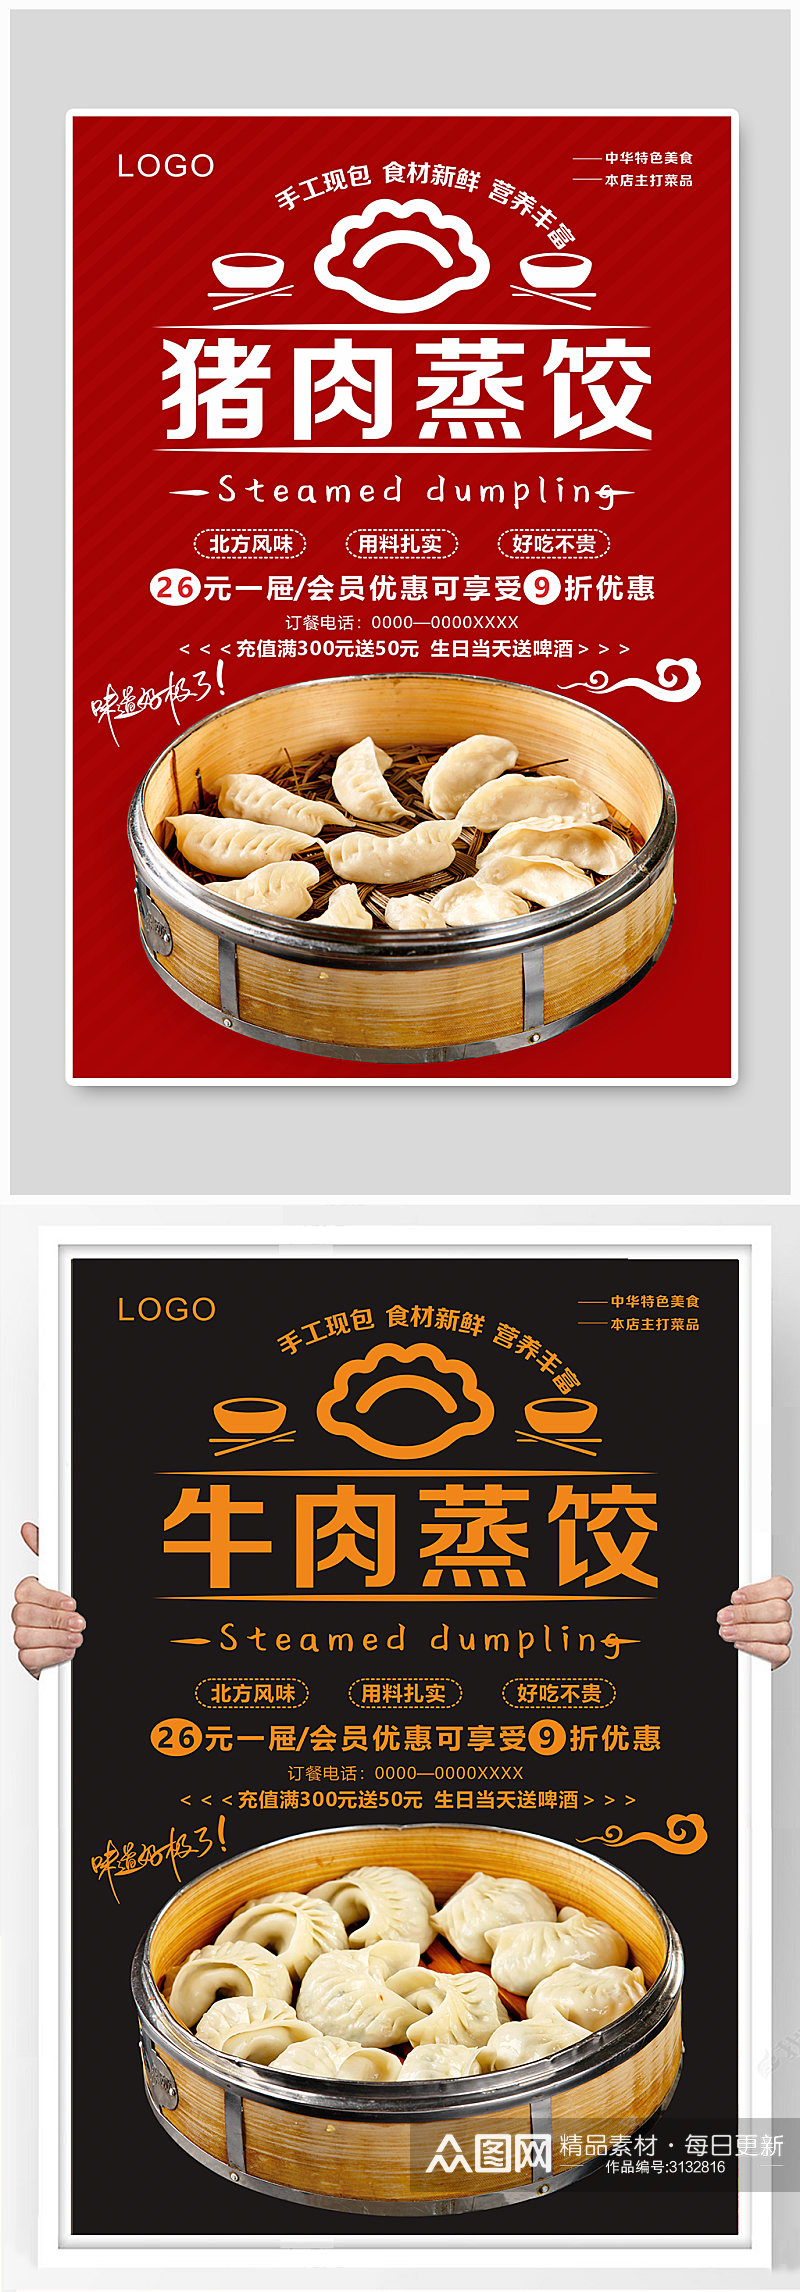 美食蒸饺系列海报素材